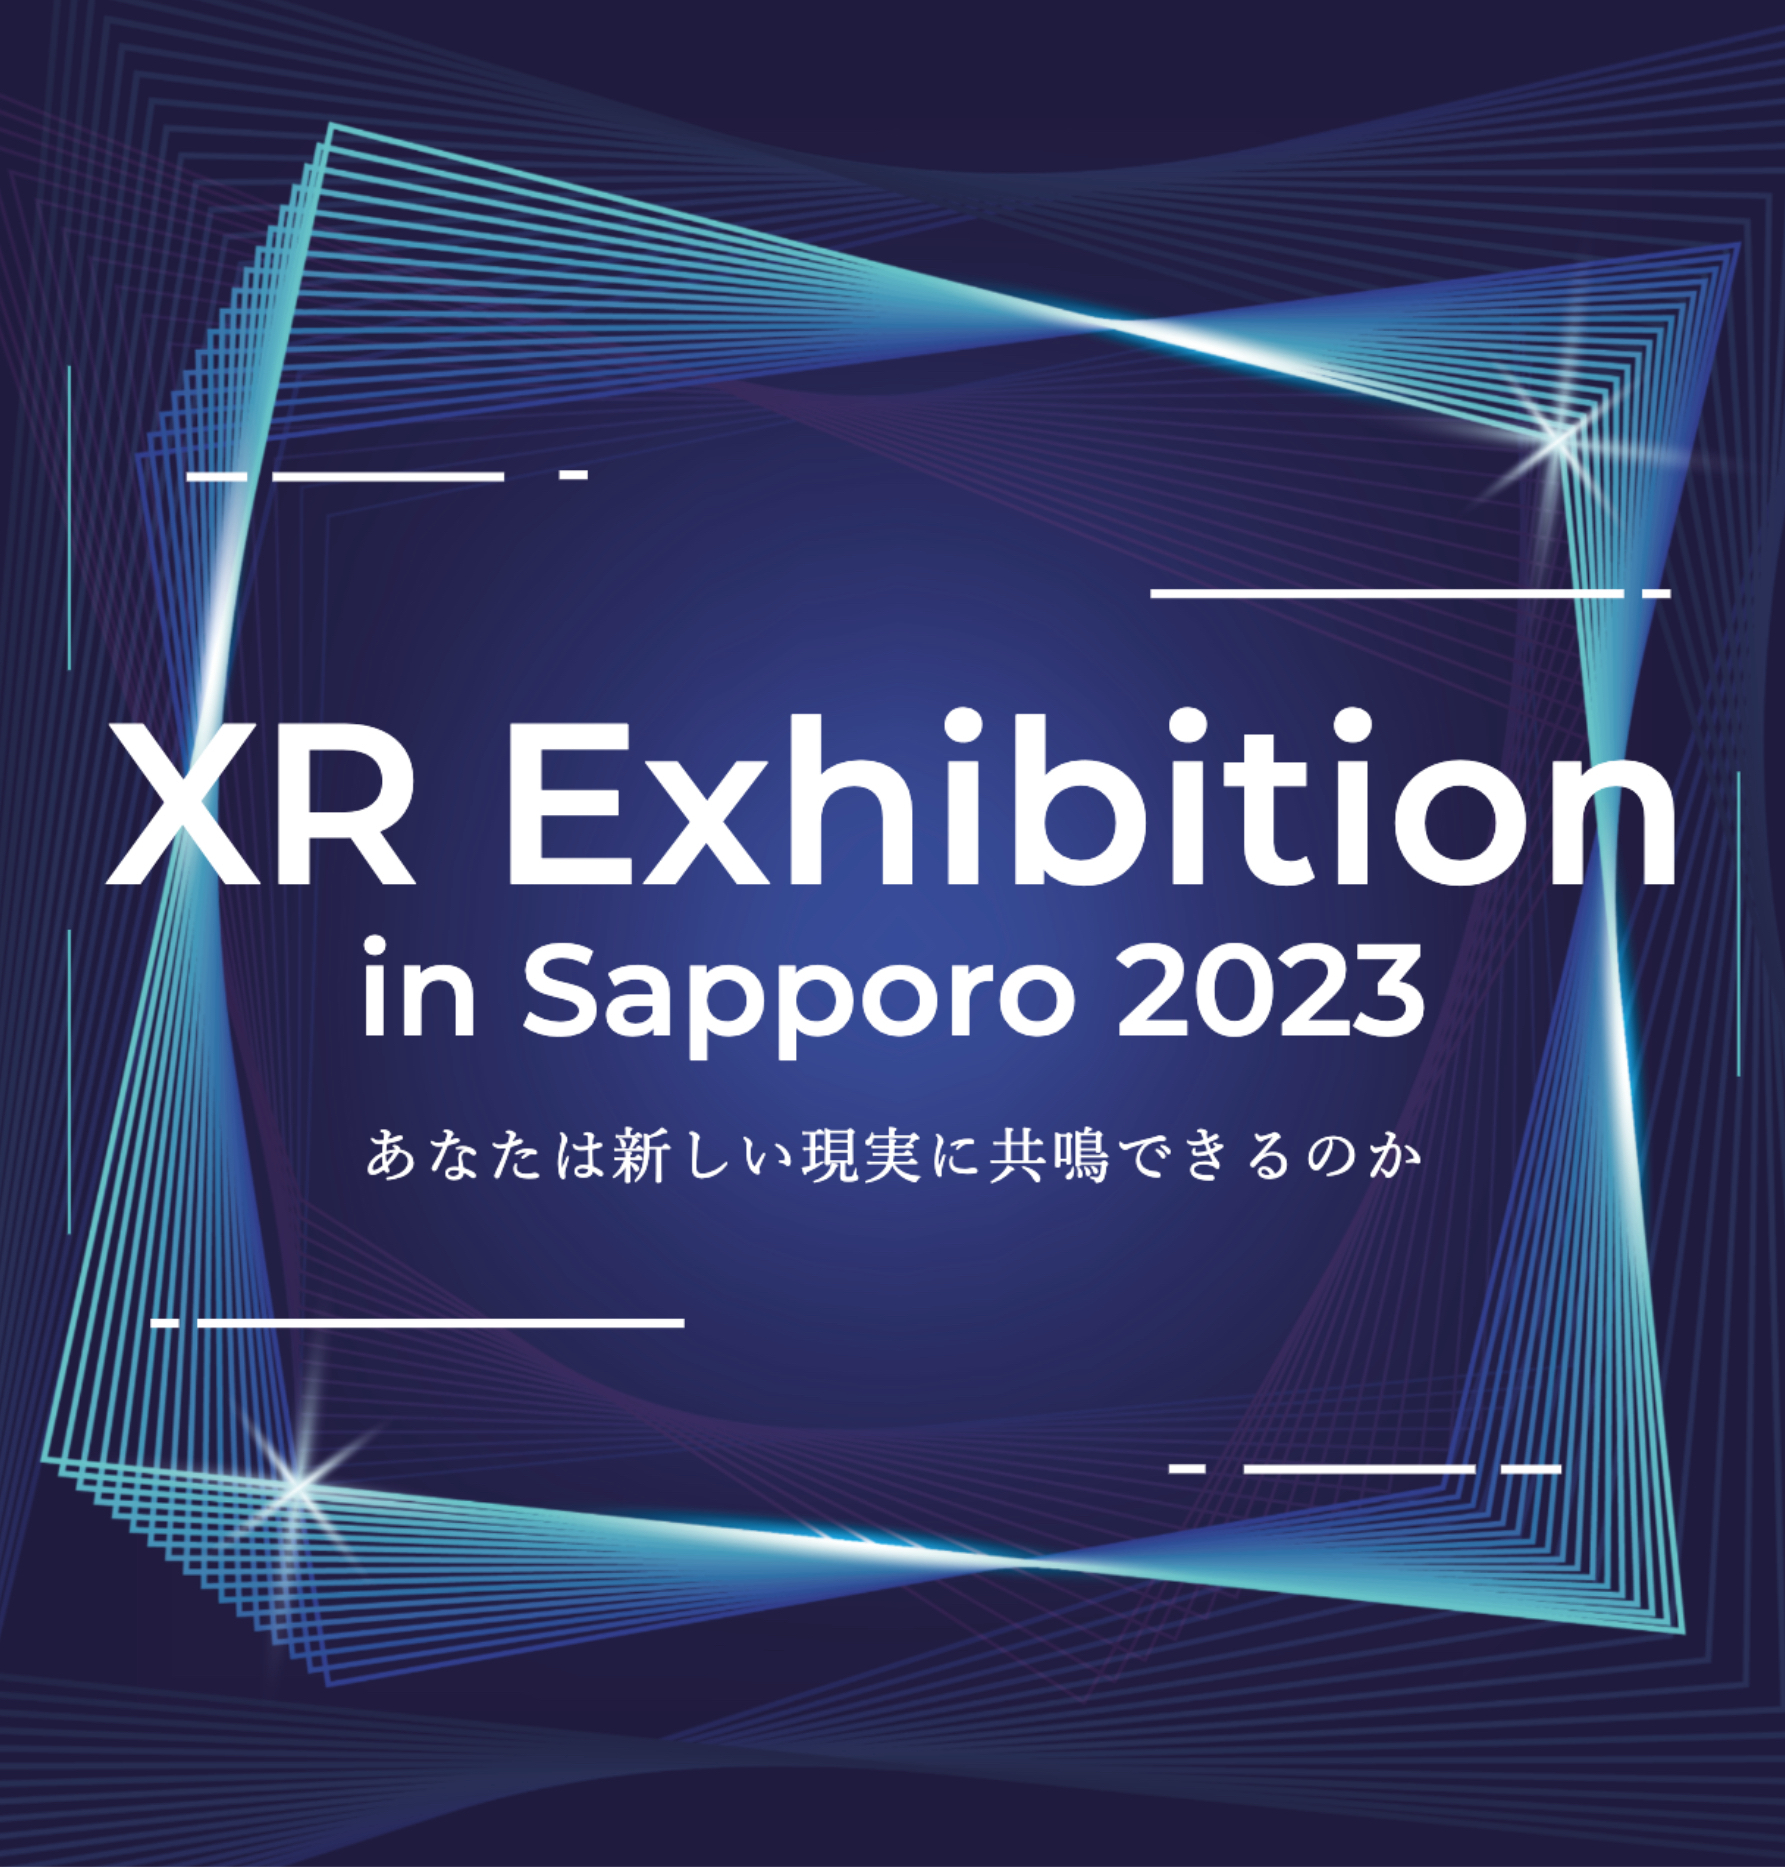 イベント「XR Exhibition in Sapporo 2023」開催のお知らせ